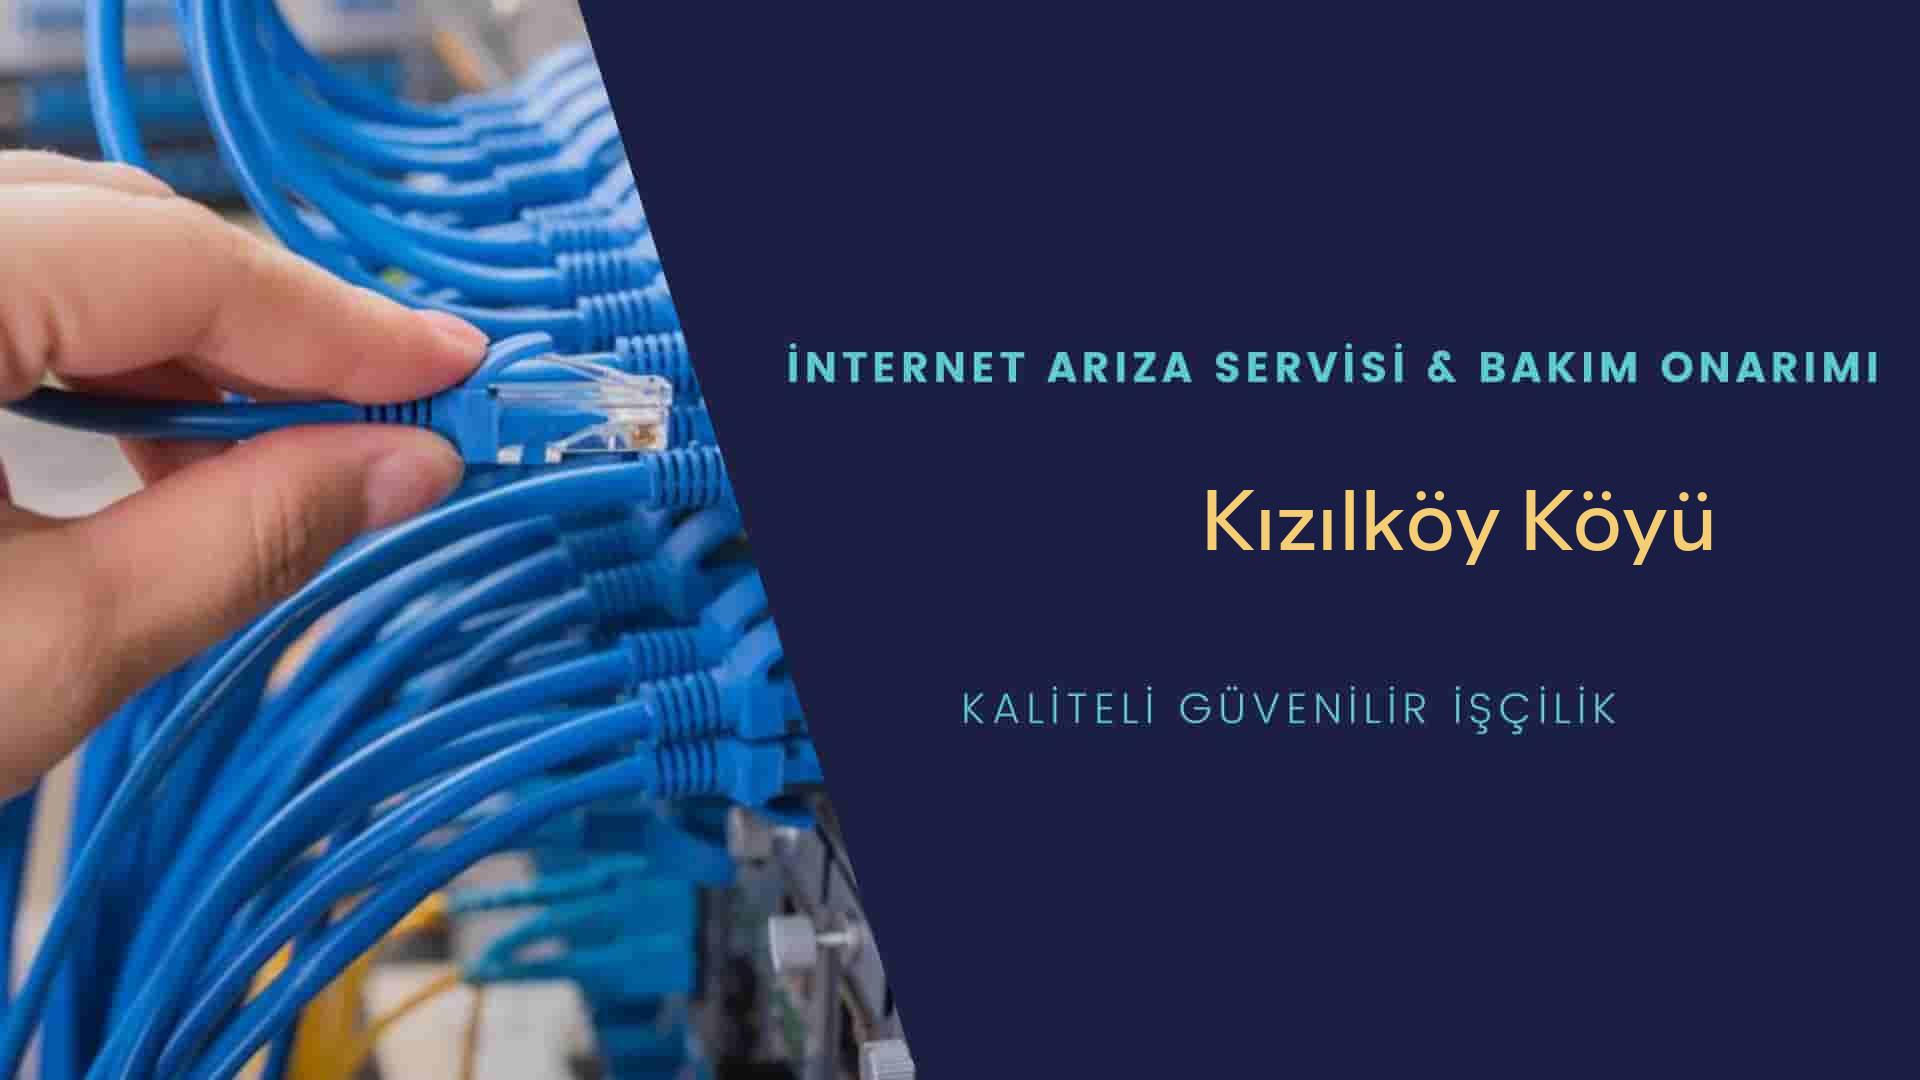 Kızılköy Köyü internet kablosu çekimi yapan yerler veya elektrikçiler mi? arıyorsunuz doğru yerdesiniz o zaman sizlere 7/24 yardımcı olacak profesyonel ustalarımız bir telefon kadar yakındır size.